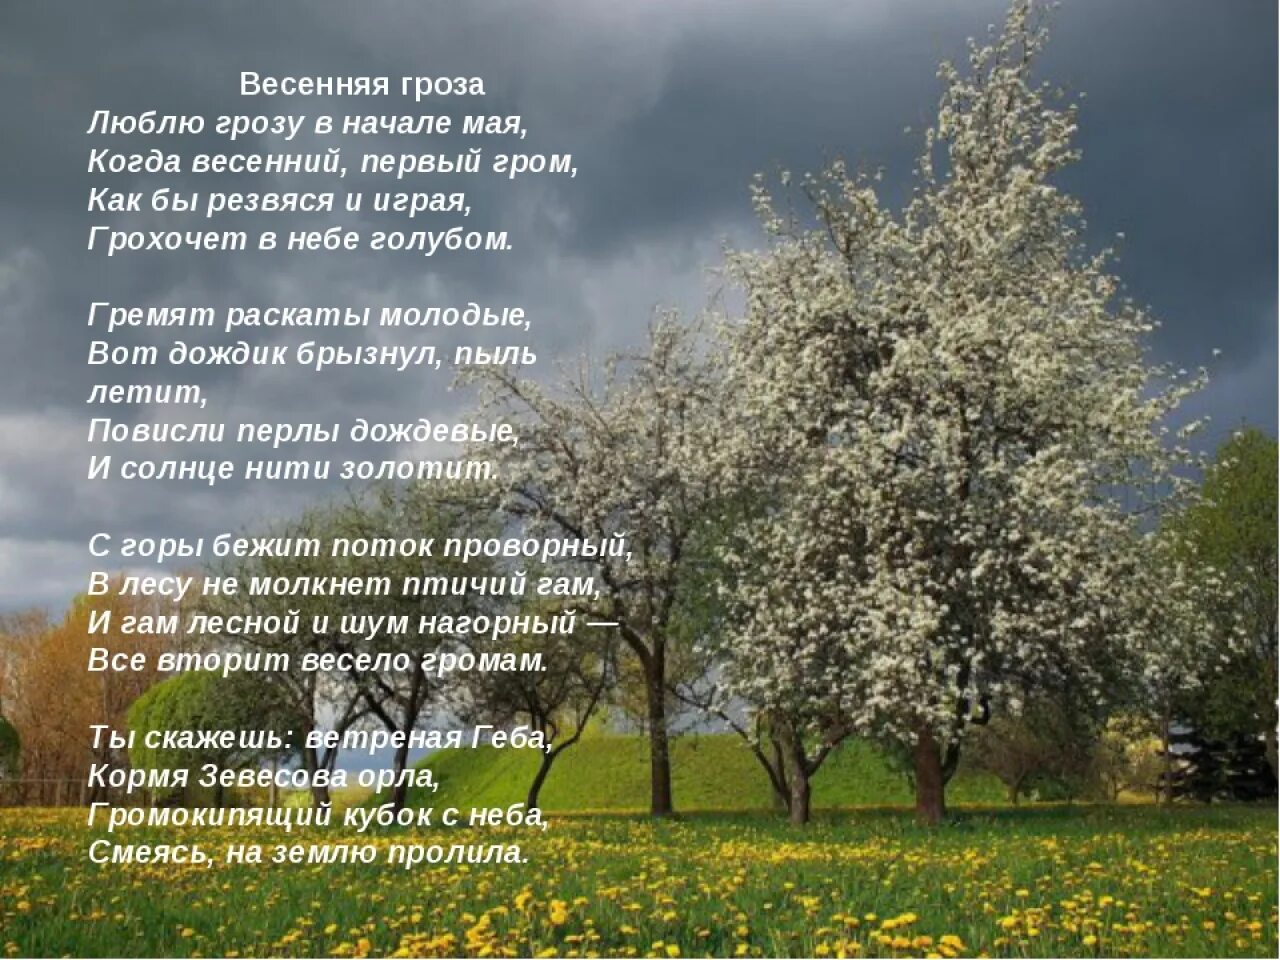 Благословенна русская земля стих. Весенние стихи. Стихи про май короткие. Стих про весну. Люблю грозу в начале мая стихотворение.